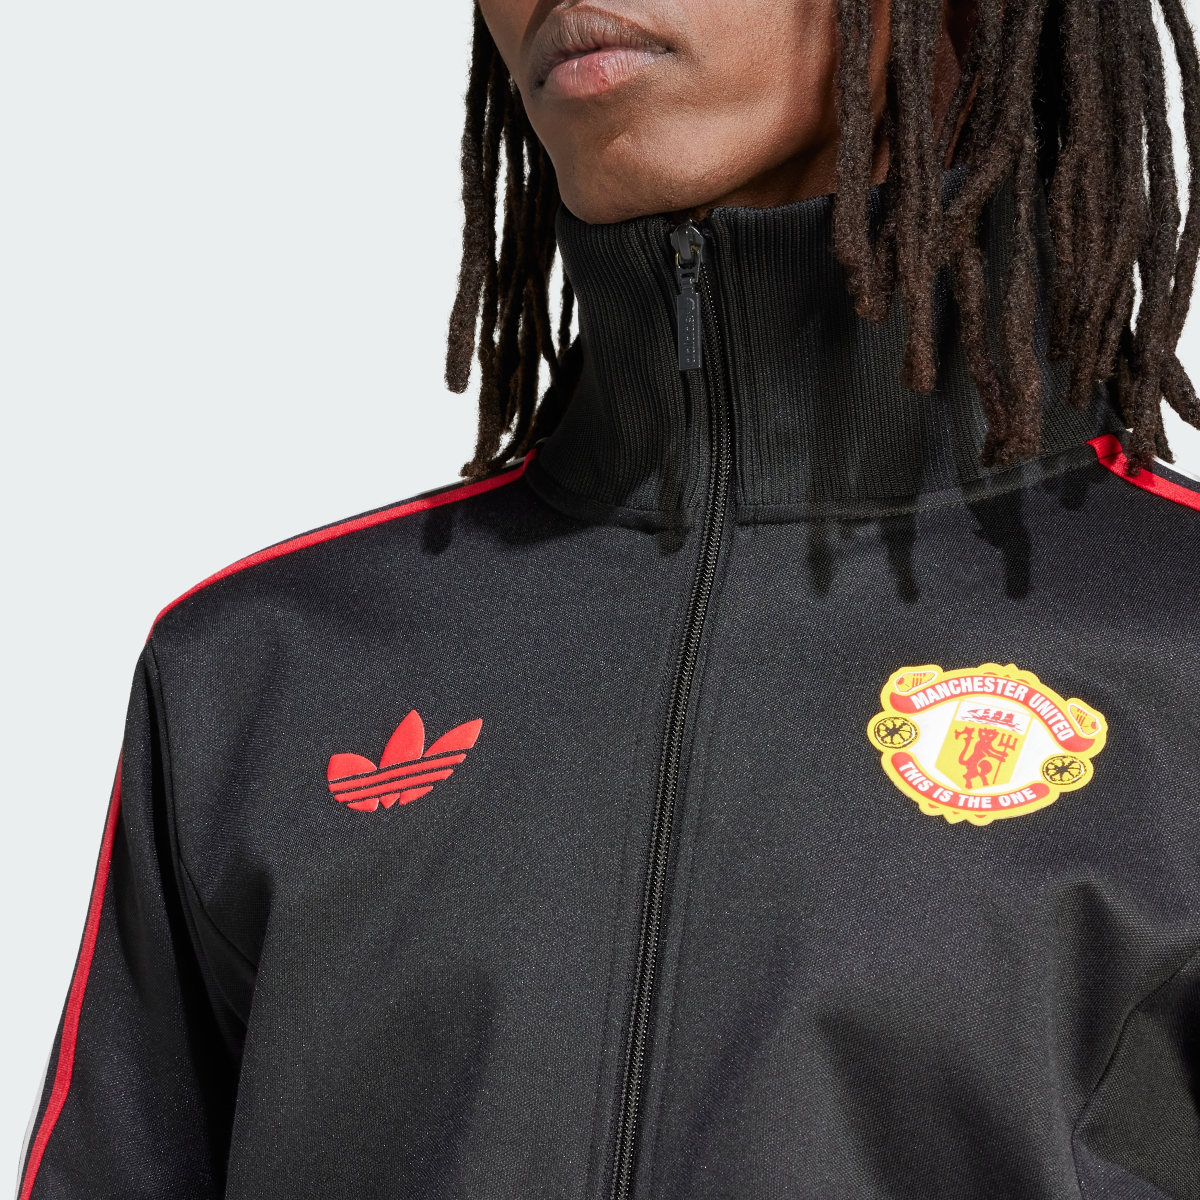 Adidas Manchester United Stone Roses Originals Track Top. 6